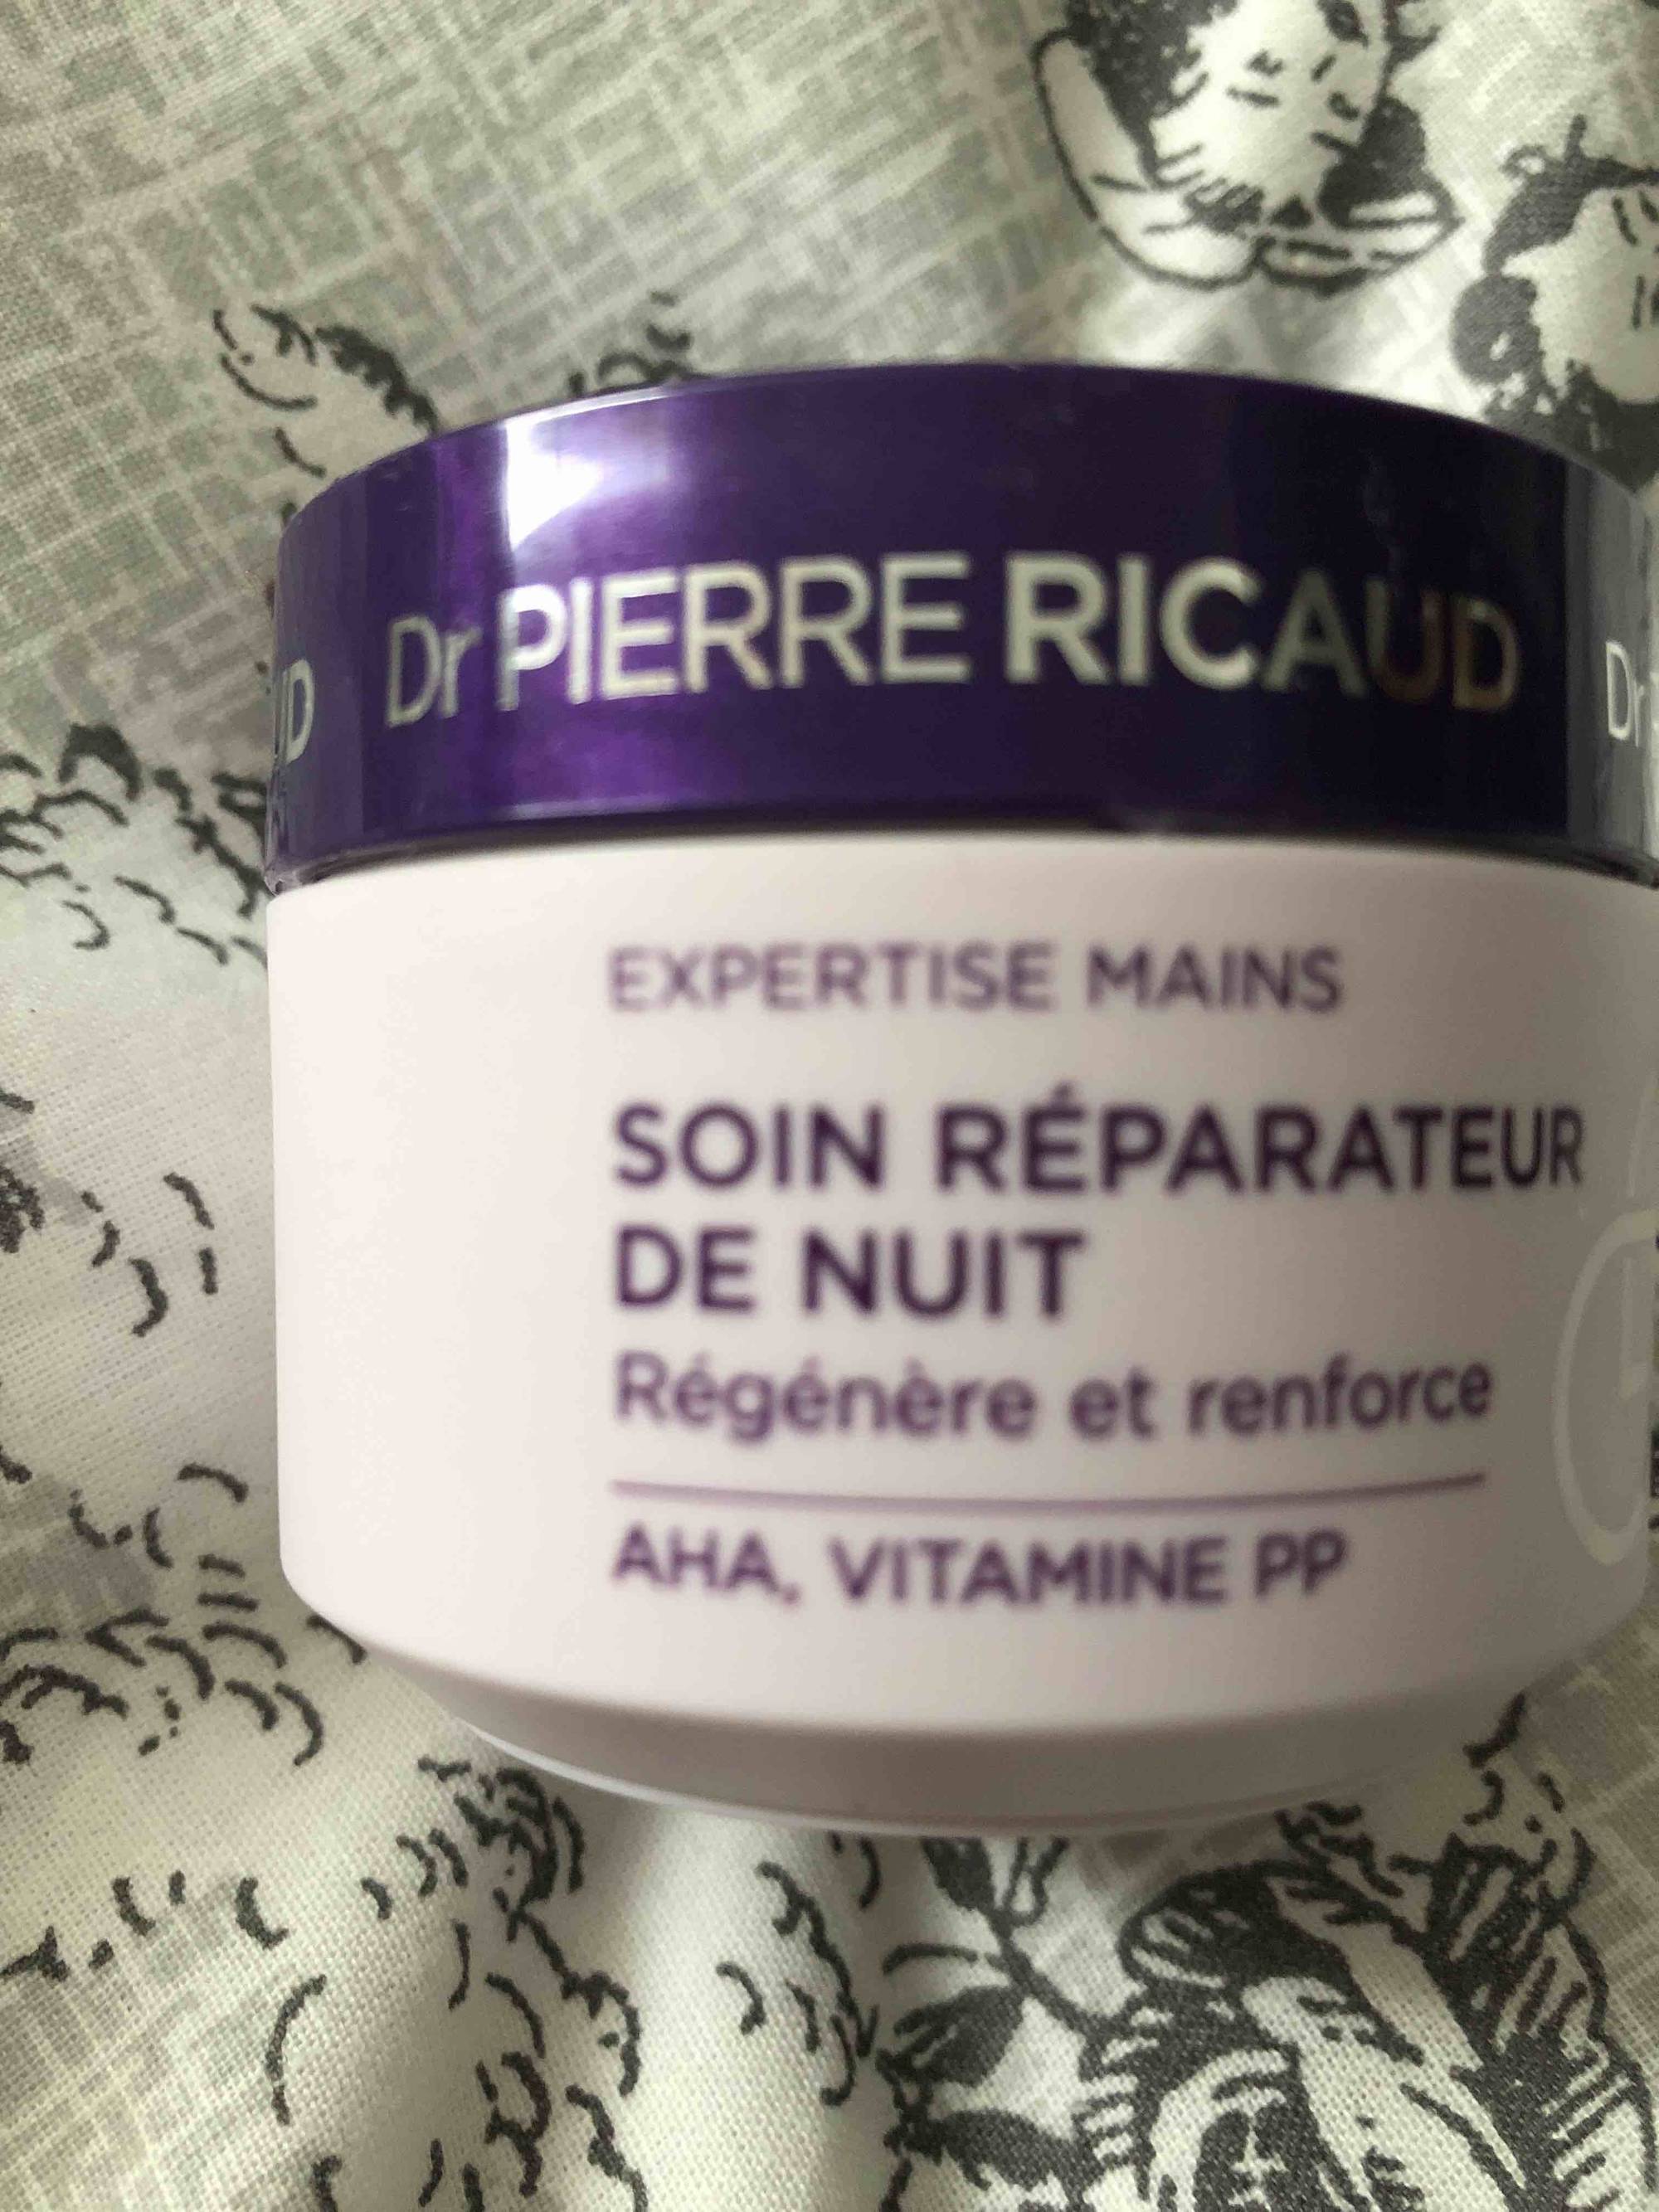 DR PIERRE RICAUD - Expertise mains - Soin réparateur de nuit